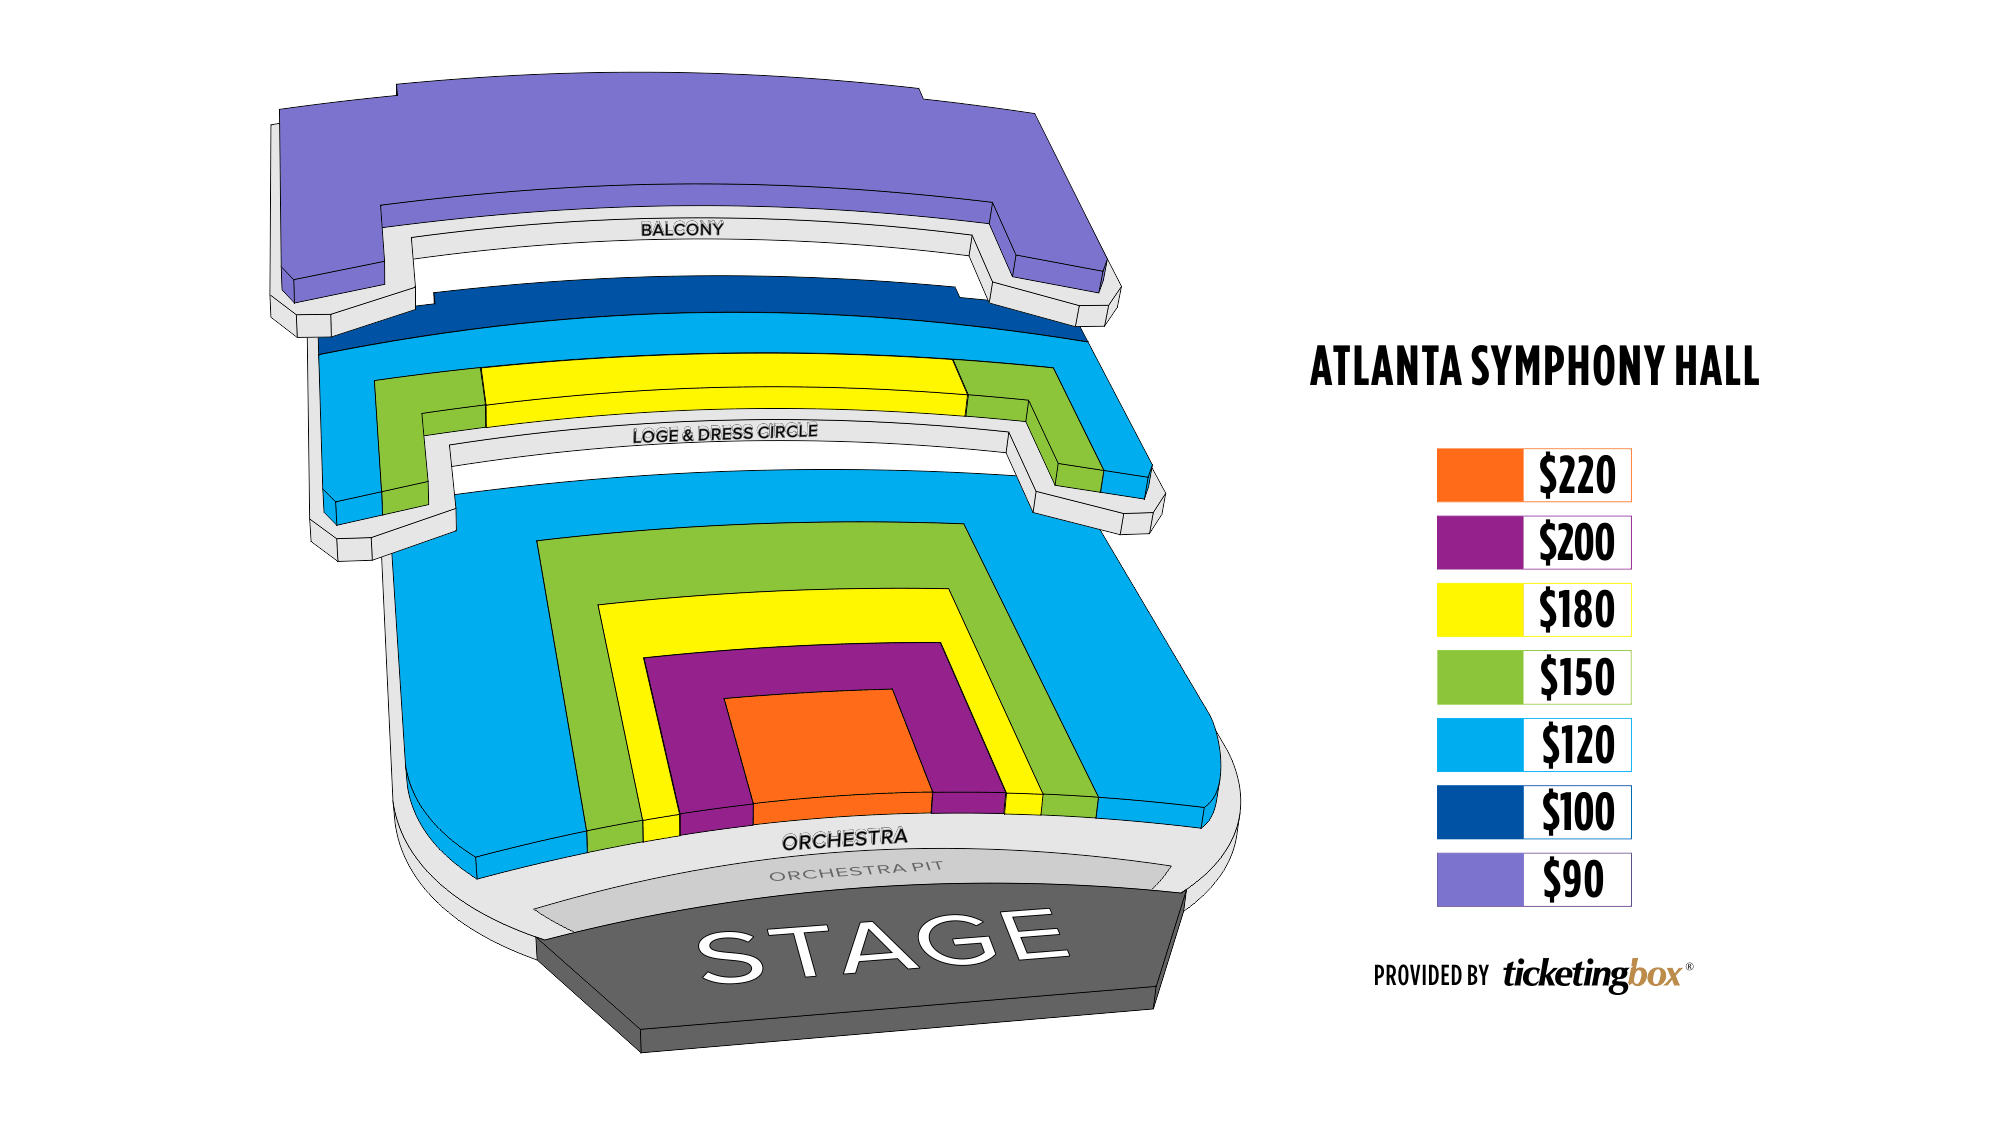 The Atlanta Seating Chart